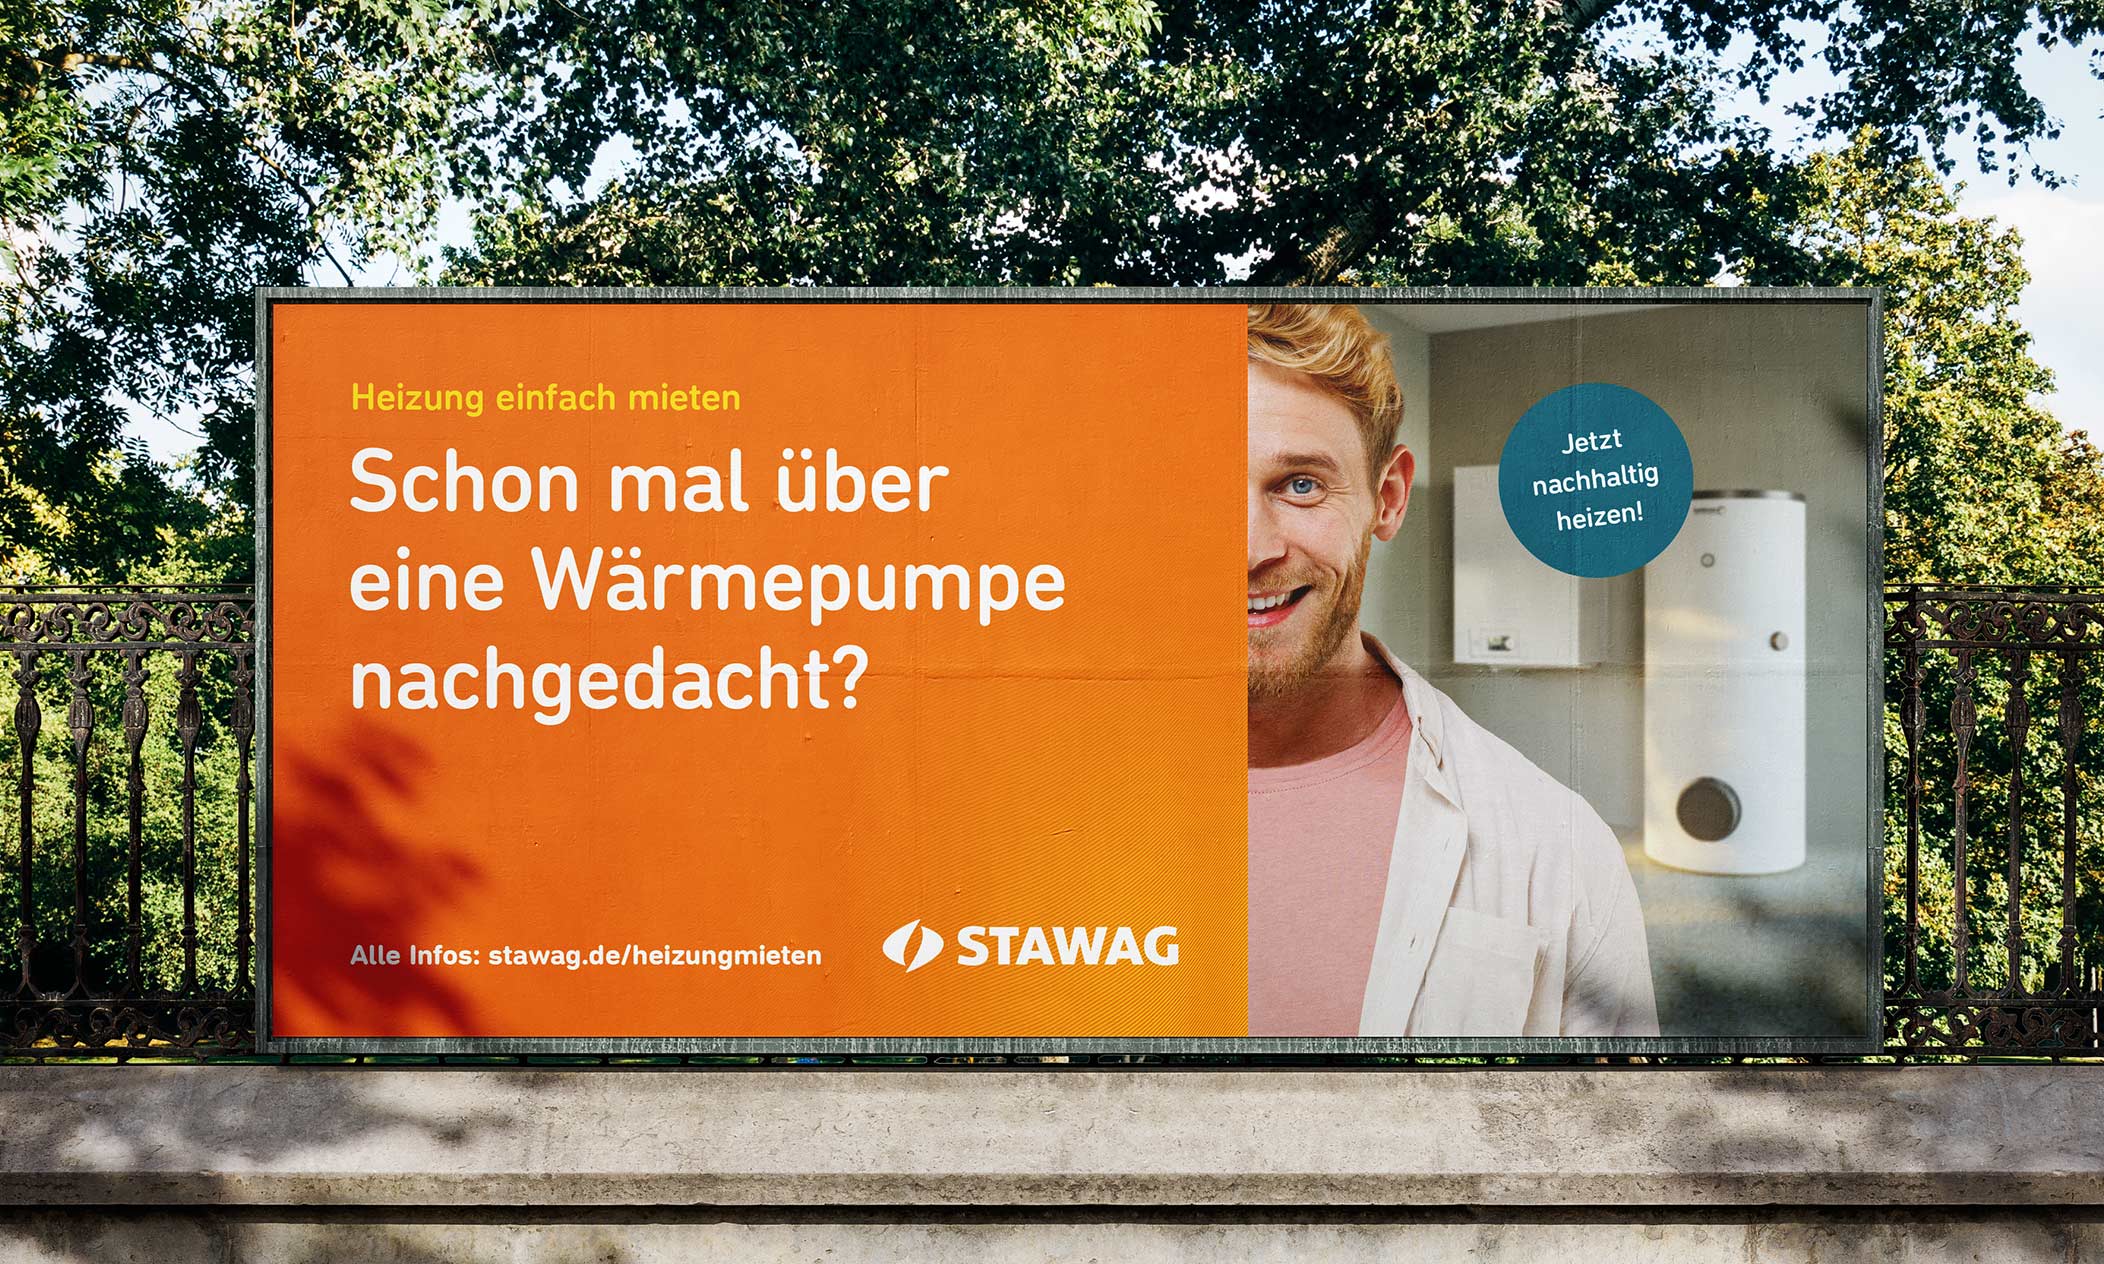 stwg_billboard_heizung_zum_mieten_teamlemke_werbeagentur_aachen_2104x1264x